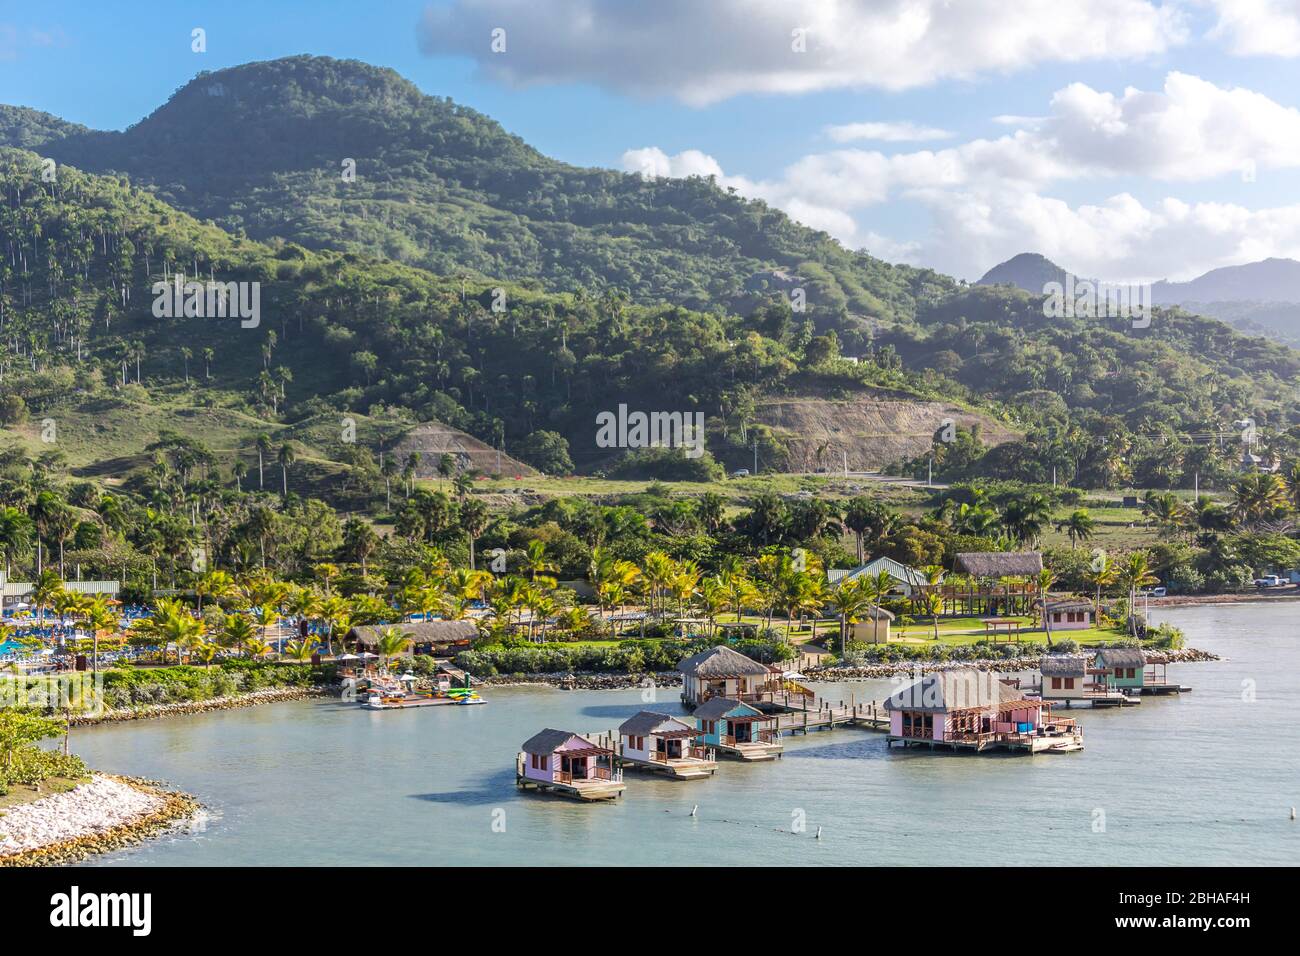 Aussicht vom Kreuzfahrtschiff, Touristenzentrum, Amber Cove Cruise Terminal, Hafen, Maimón, Dominikanische Republik, Große Antillen, Karibik, Atlantik Stock Photo